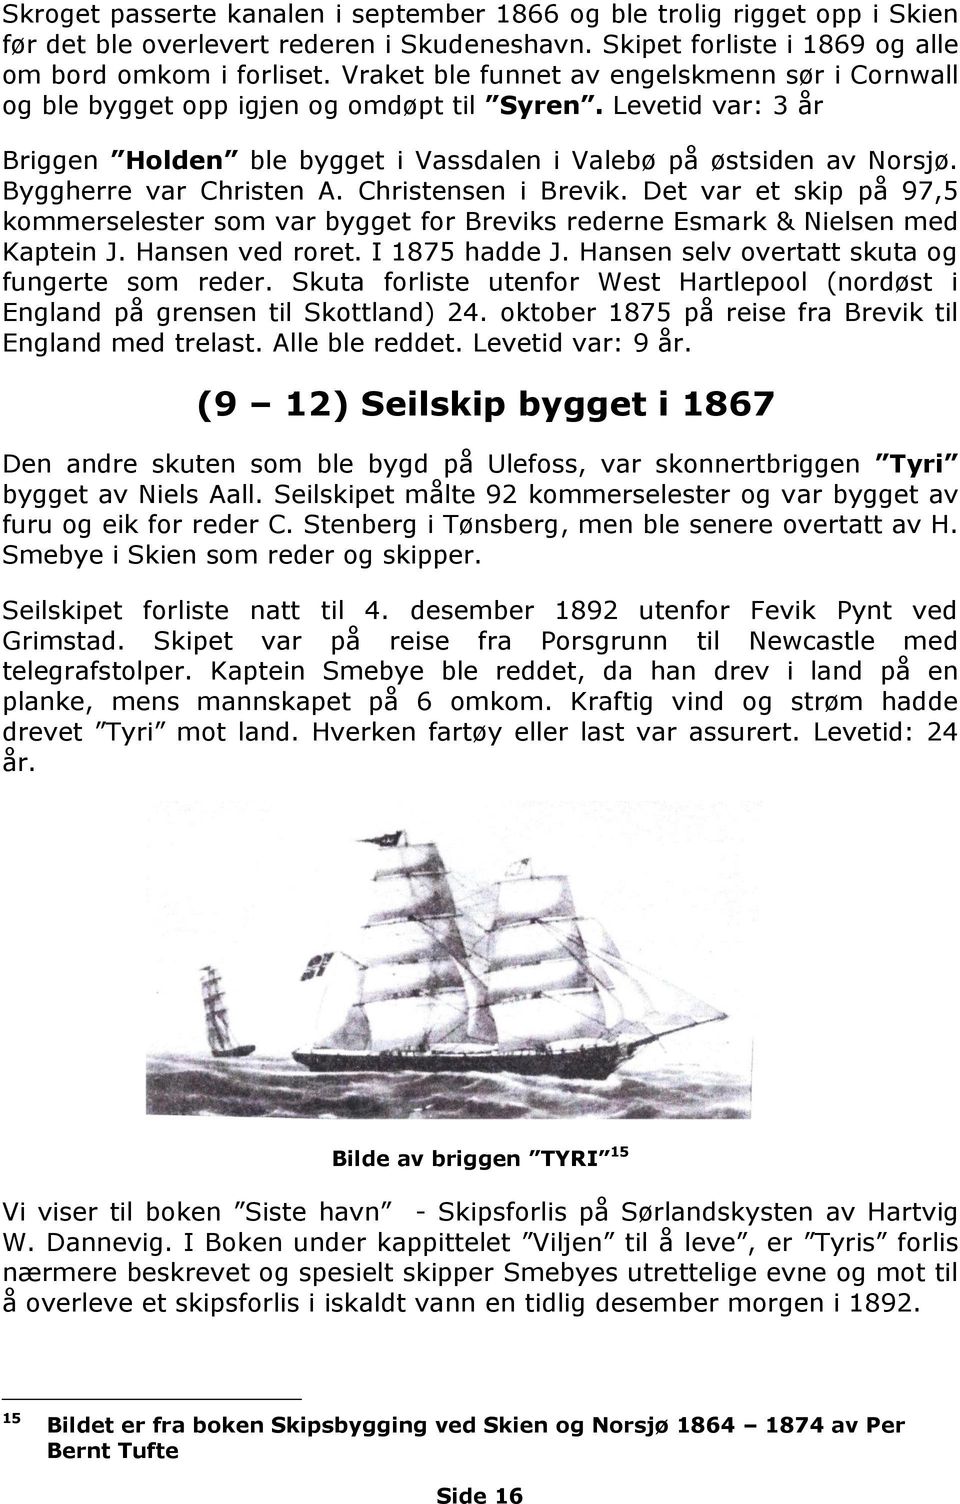 Byggherre var Christen A. Christensen i Brevik. Det var et skip på 97,5 kommerselester som var bygget for Breviks rederne Esmark & Nielsen med Kaptein J. Hansen ved roret. I 1875 hadde J.